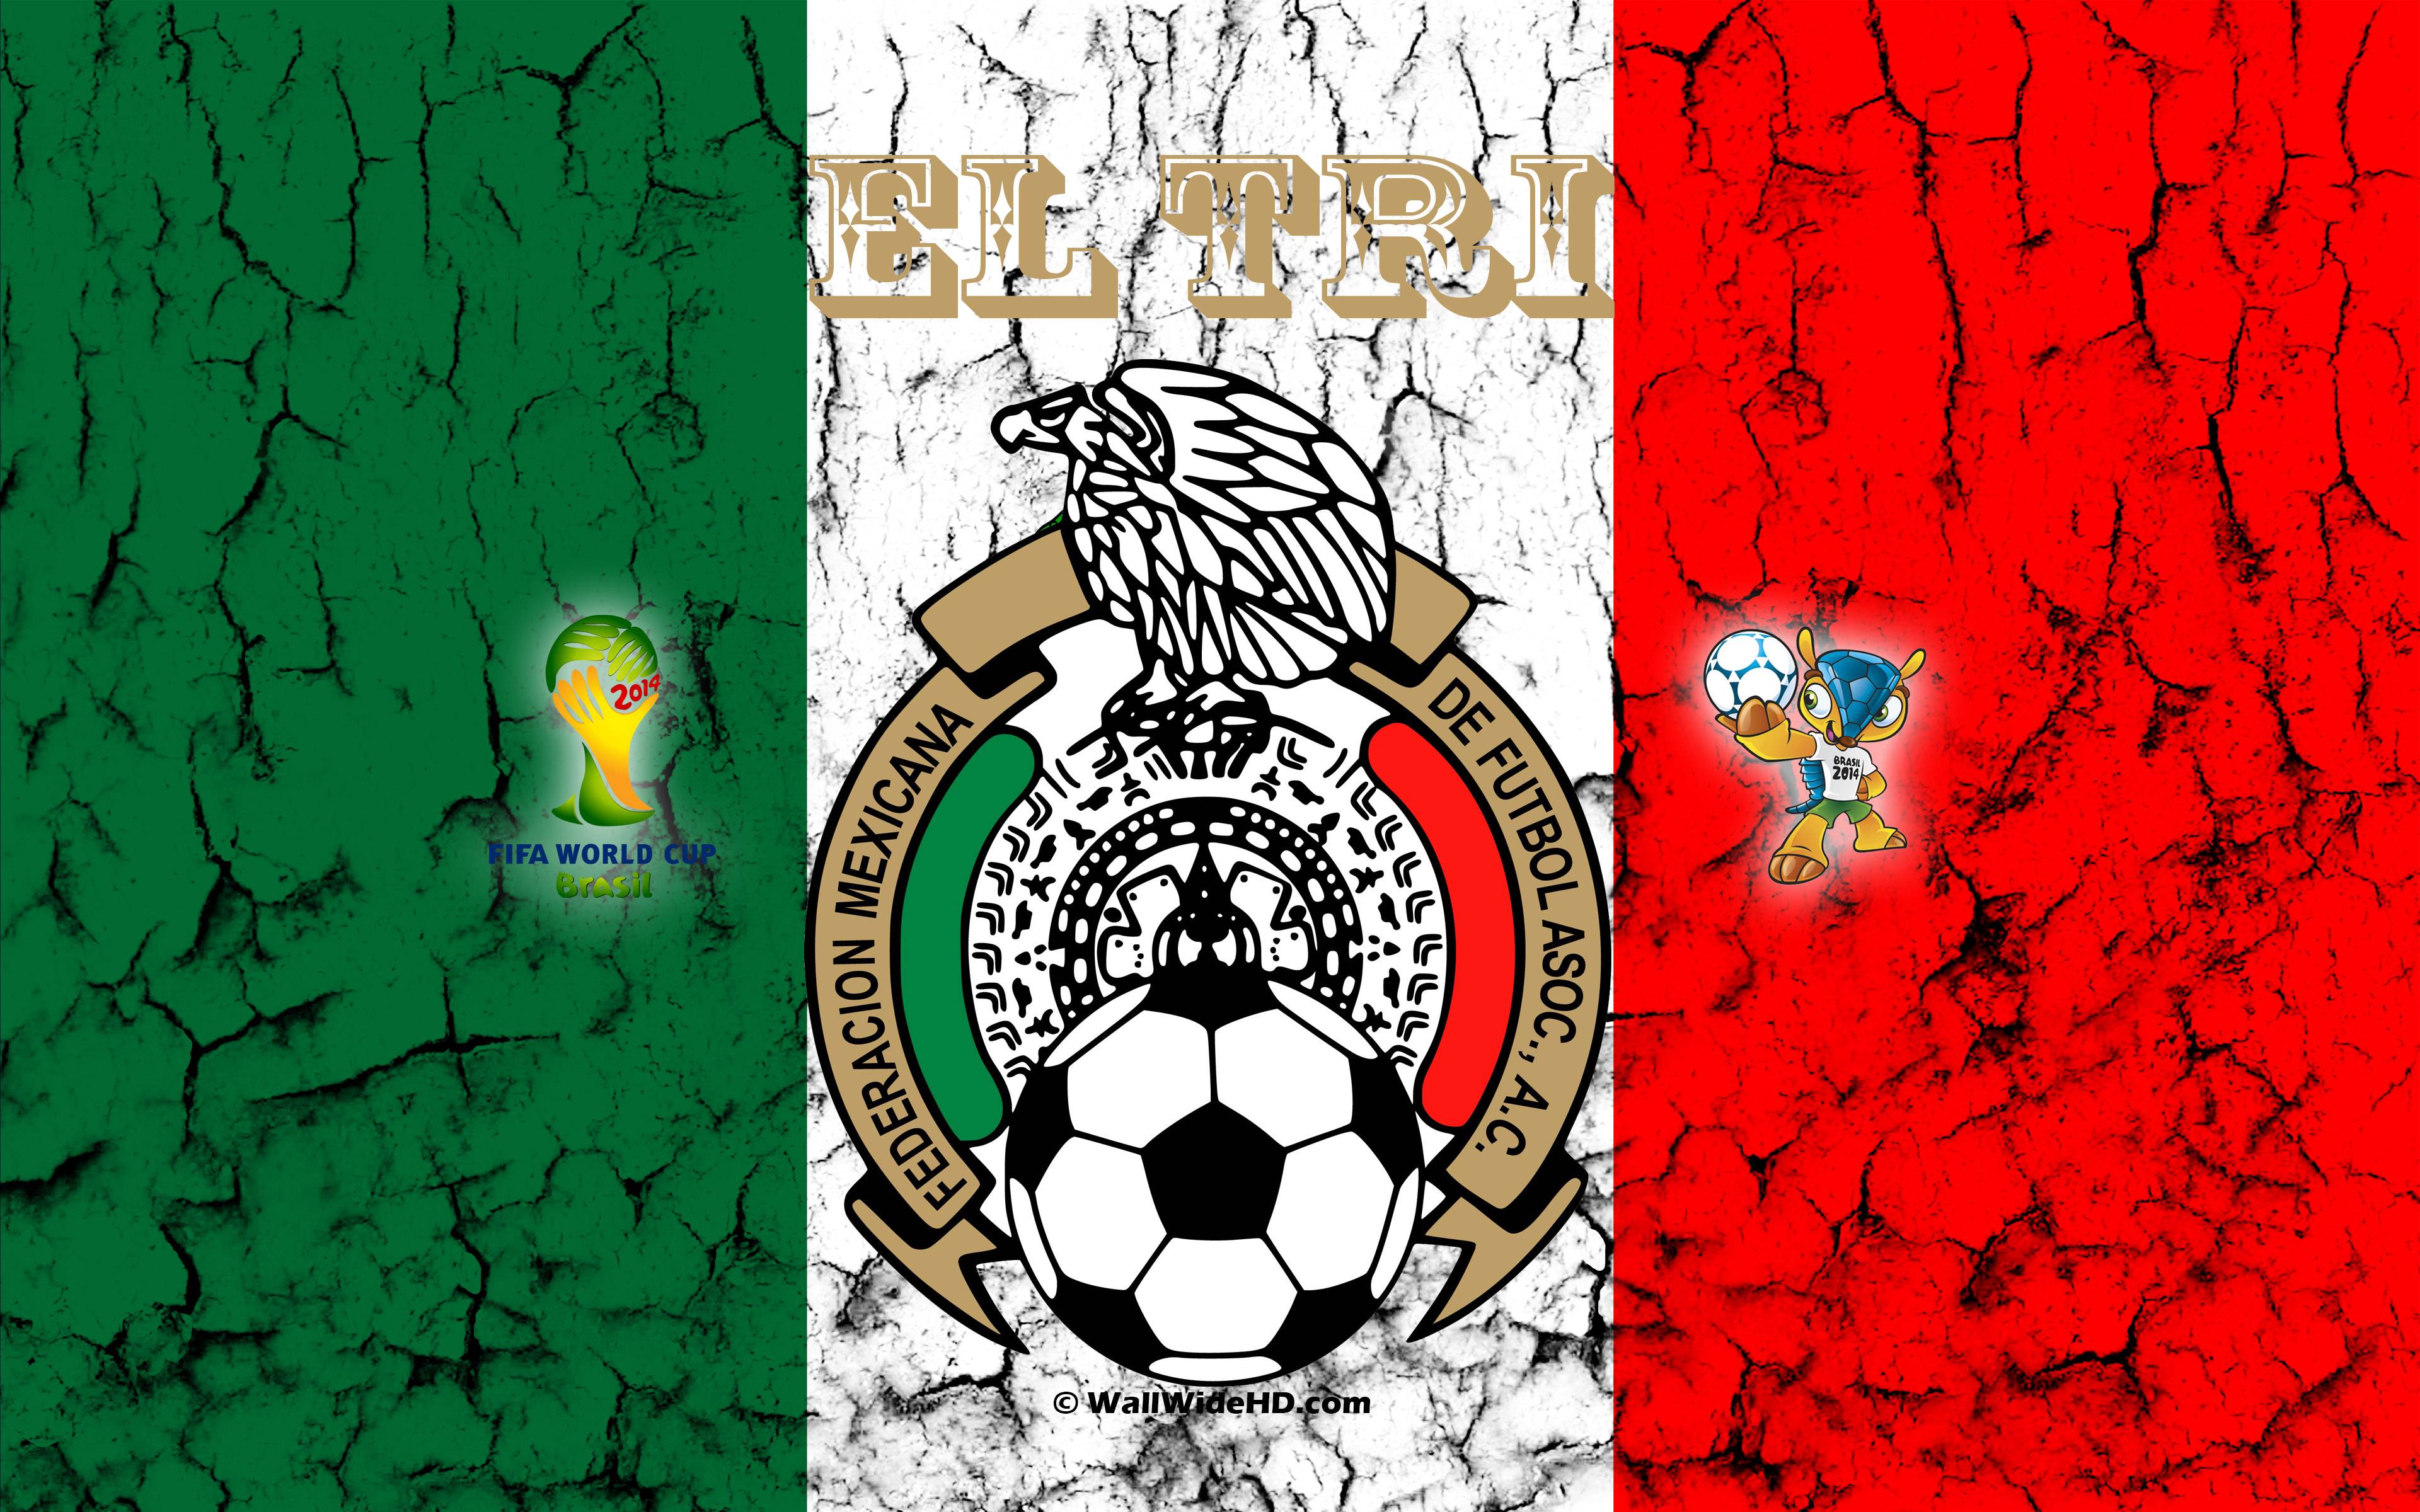 Mexico Soccer Wallpapers 2015 Wallpaper Cave HD Wallpapers Download Free Images Wallpaper [wallpaper981.blogspot.com]